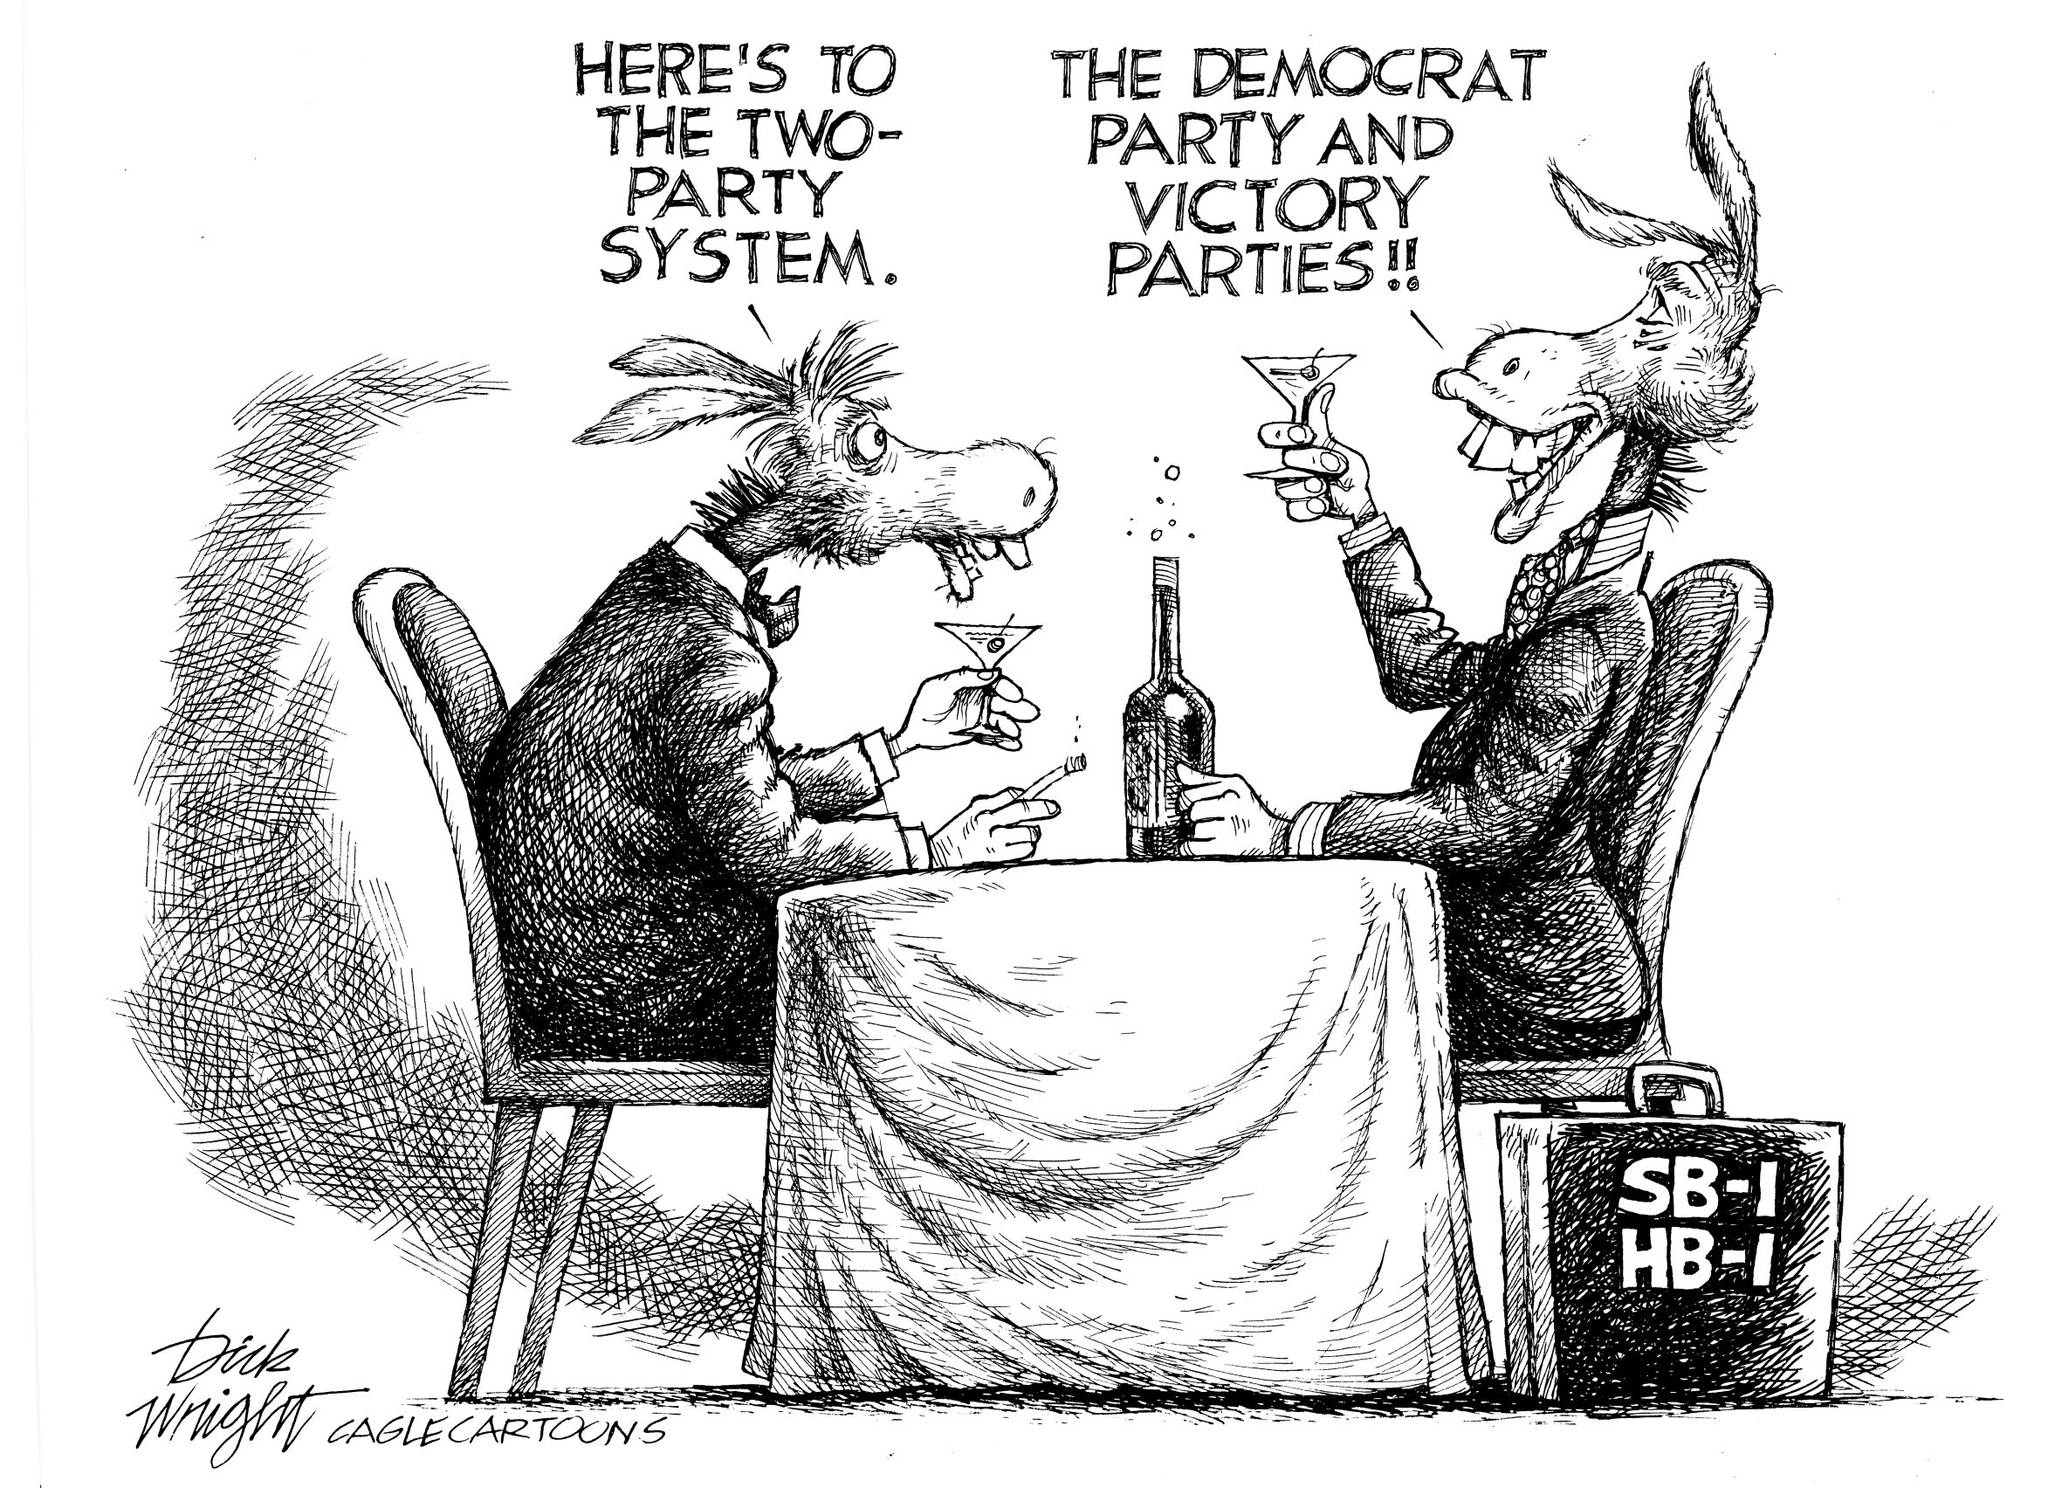 Dick Wright, PoliticalCartoons.com